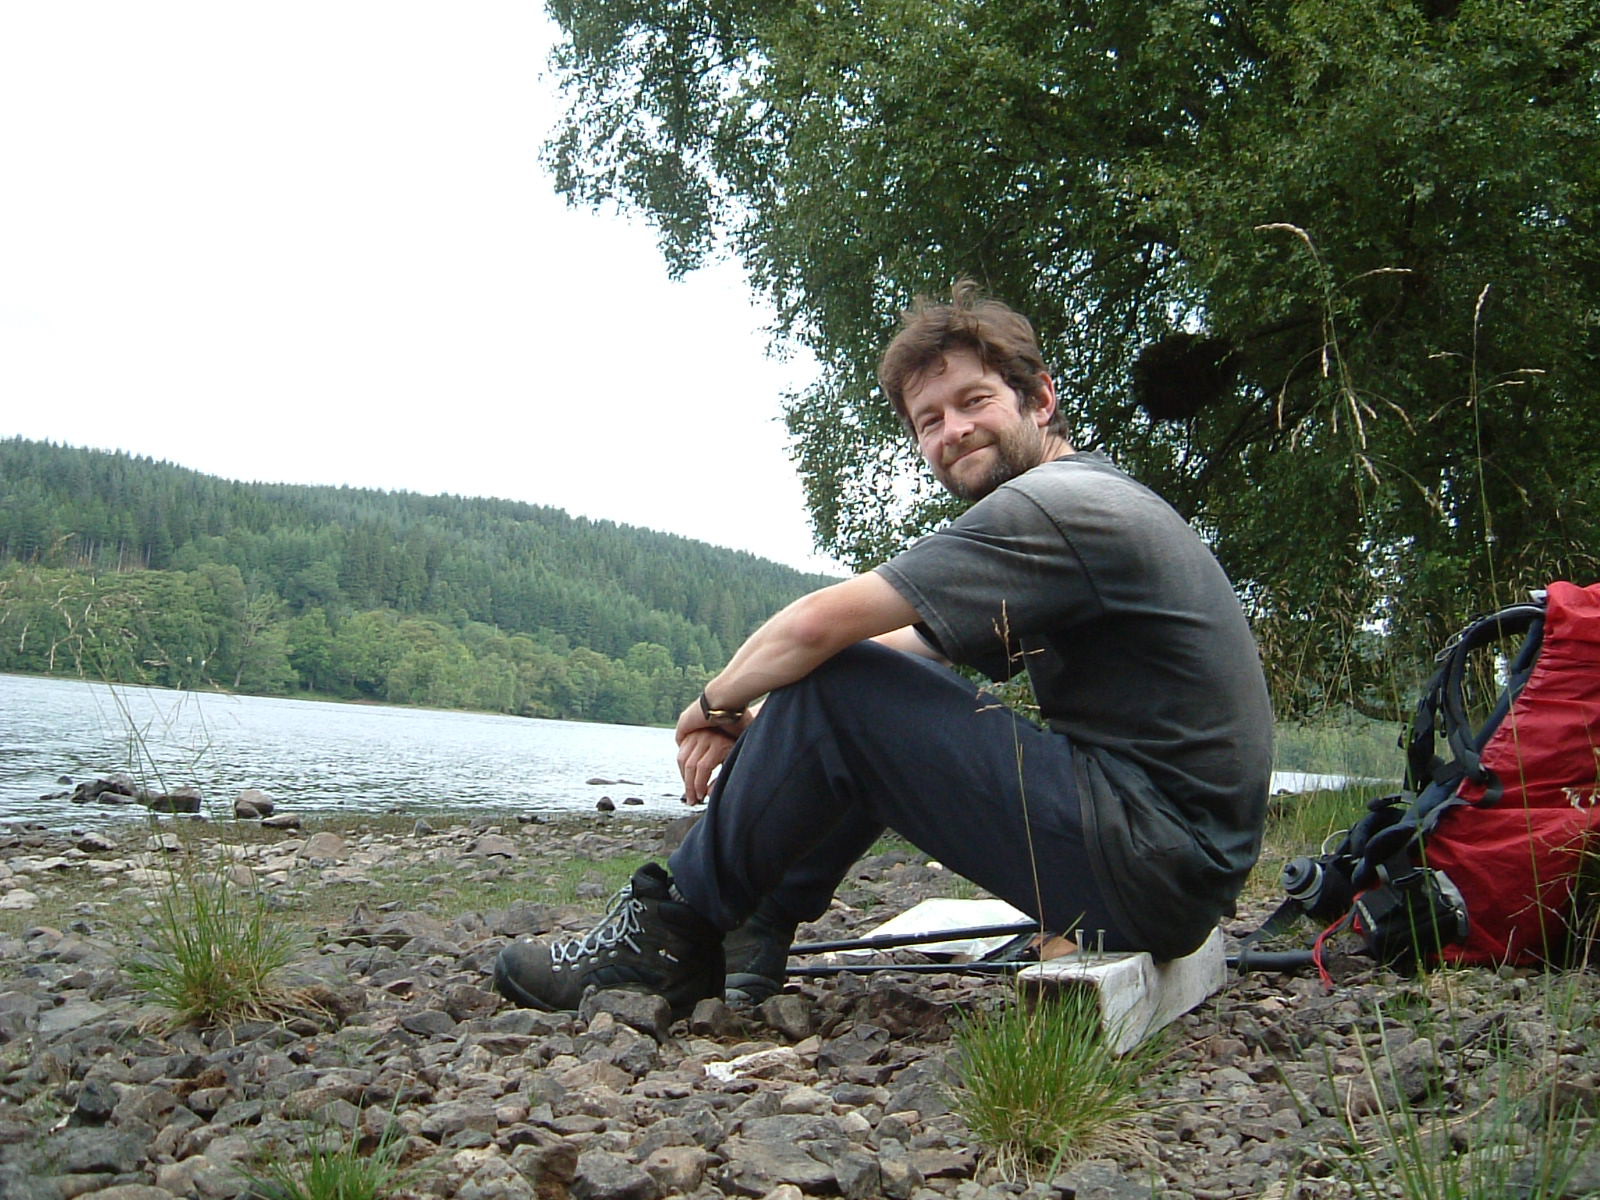 Mark resting by Loch Oich